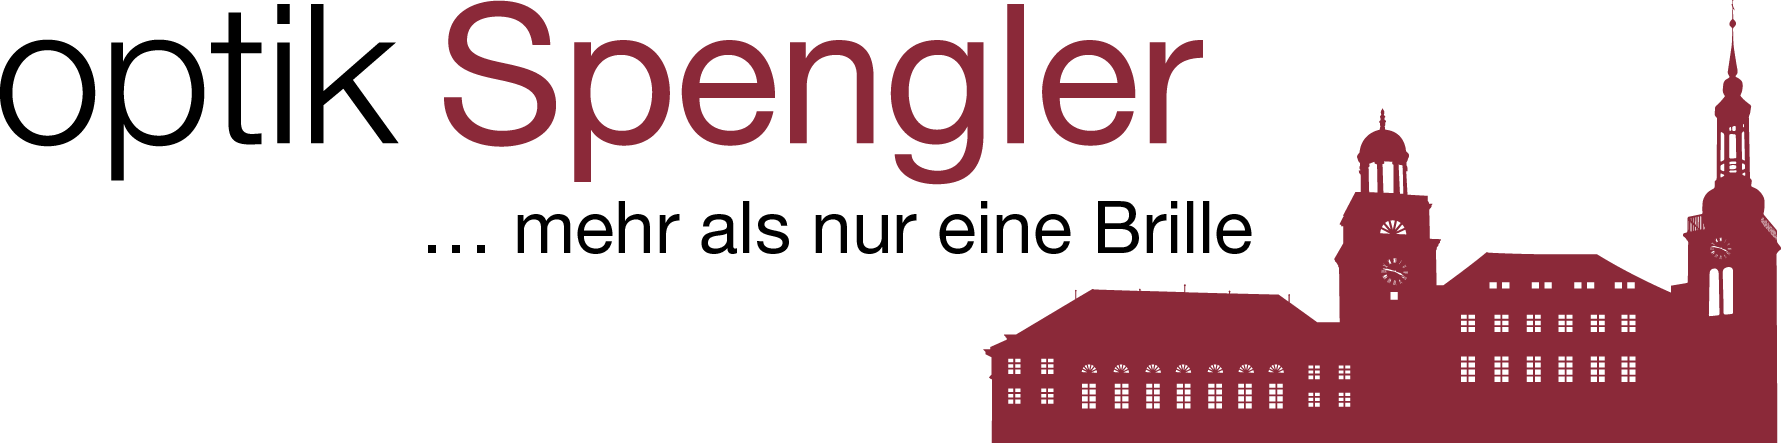 Optik Spengler_logo